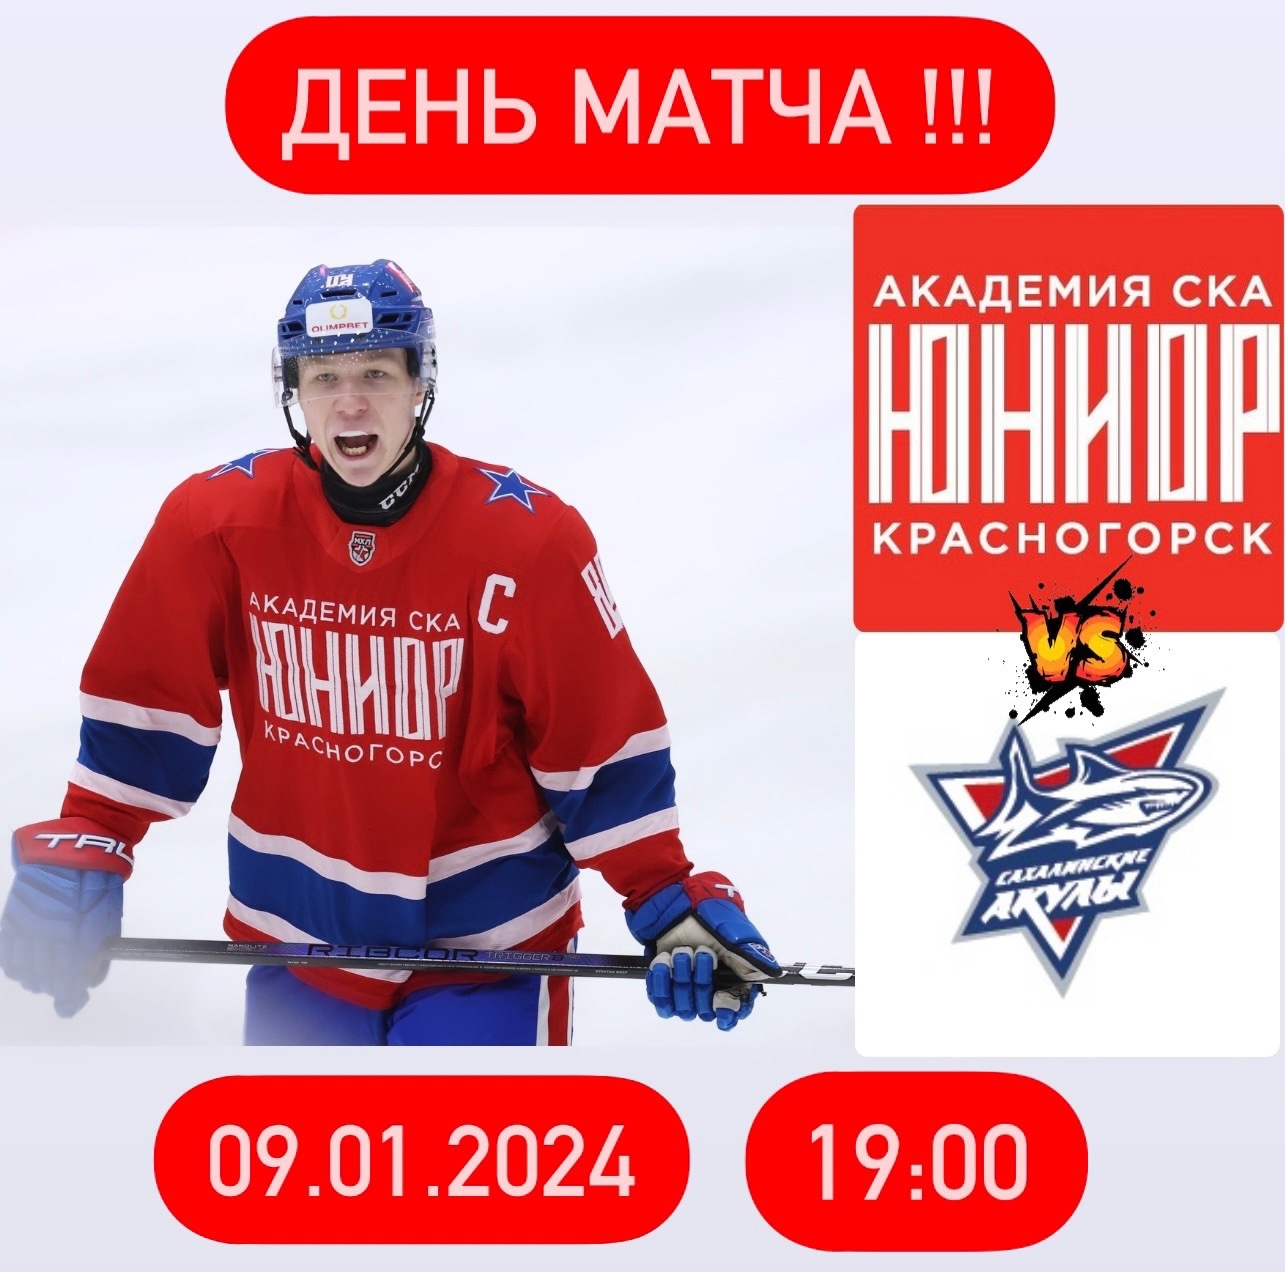 Матч между командами «Академия СКА-Юриор» vs. «Сахалинские Акулы».